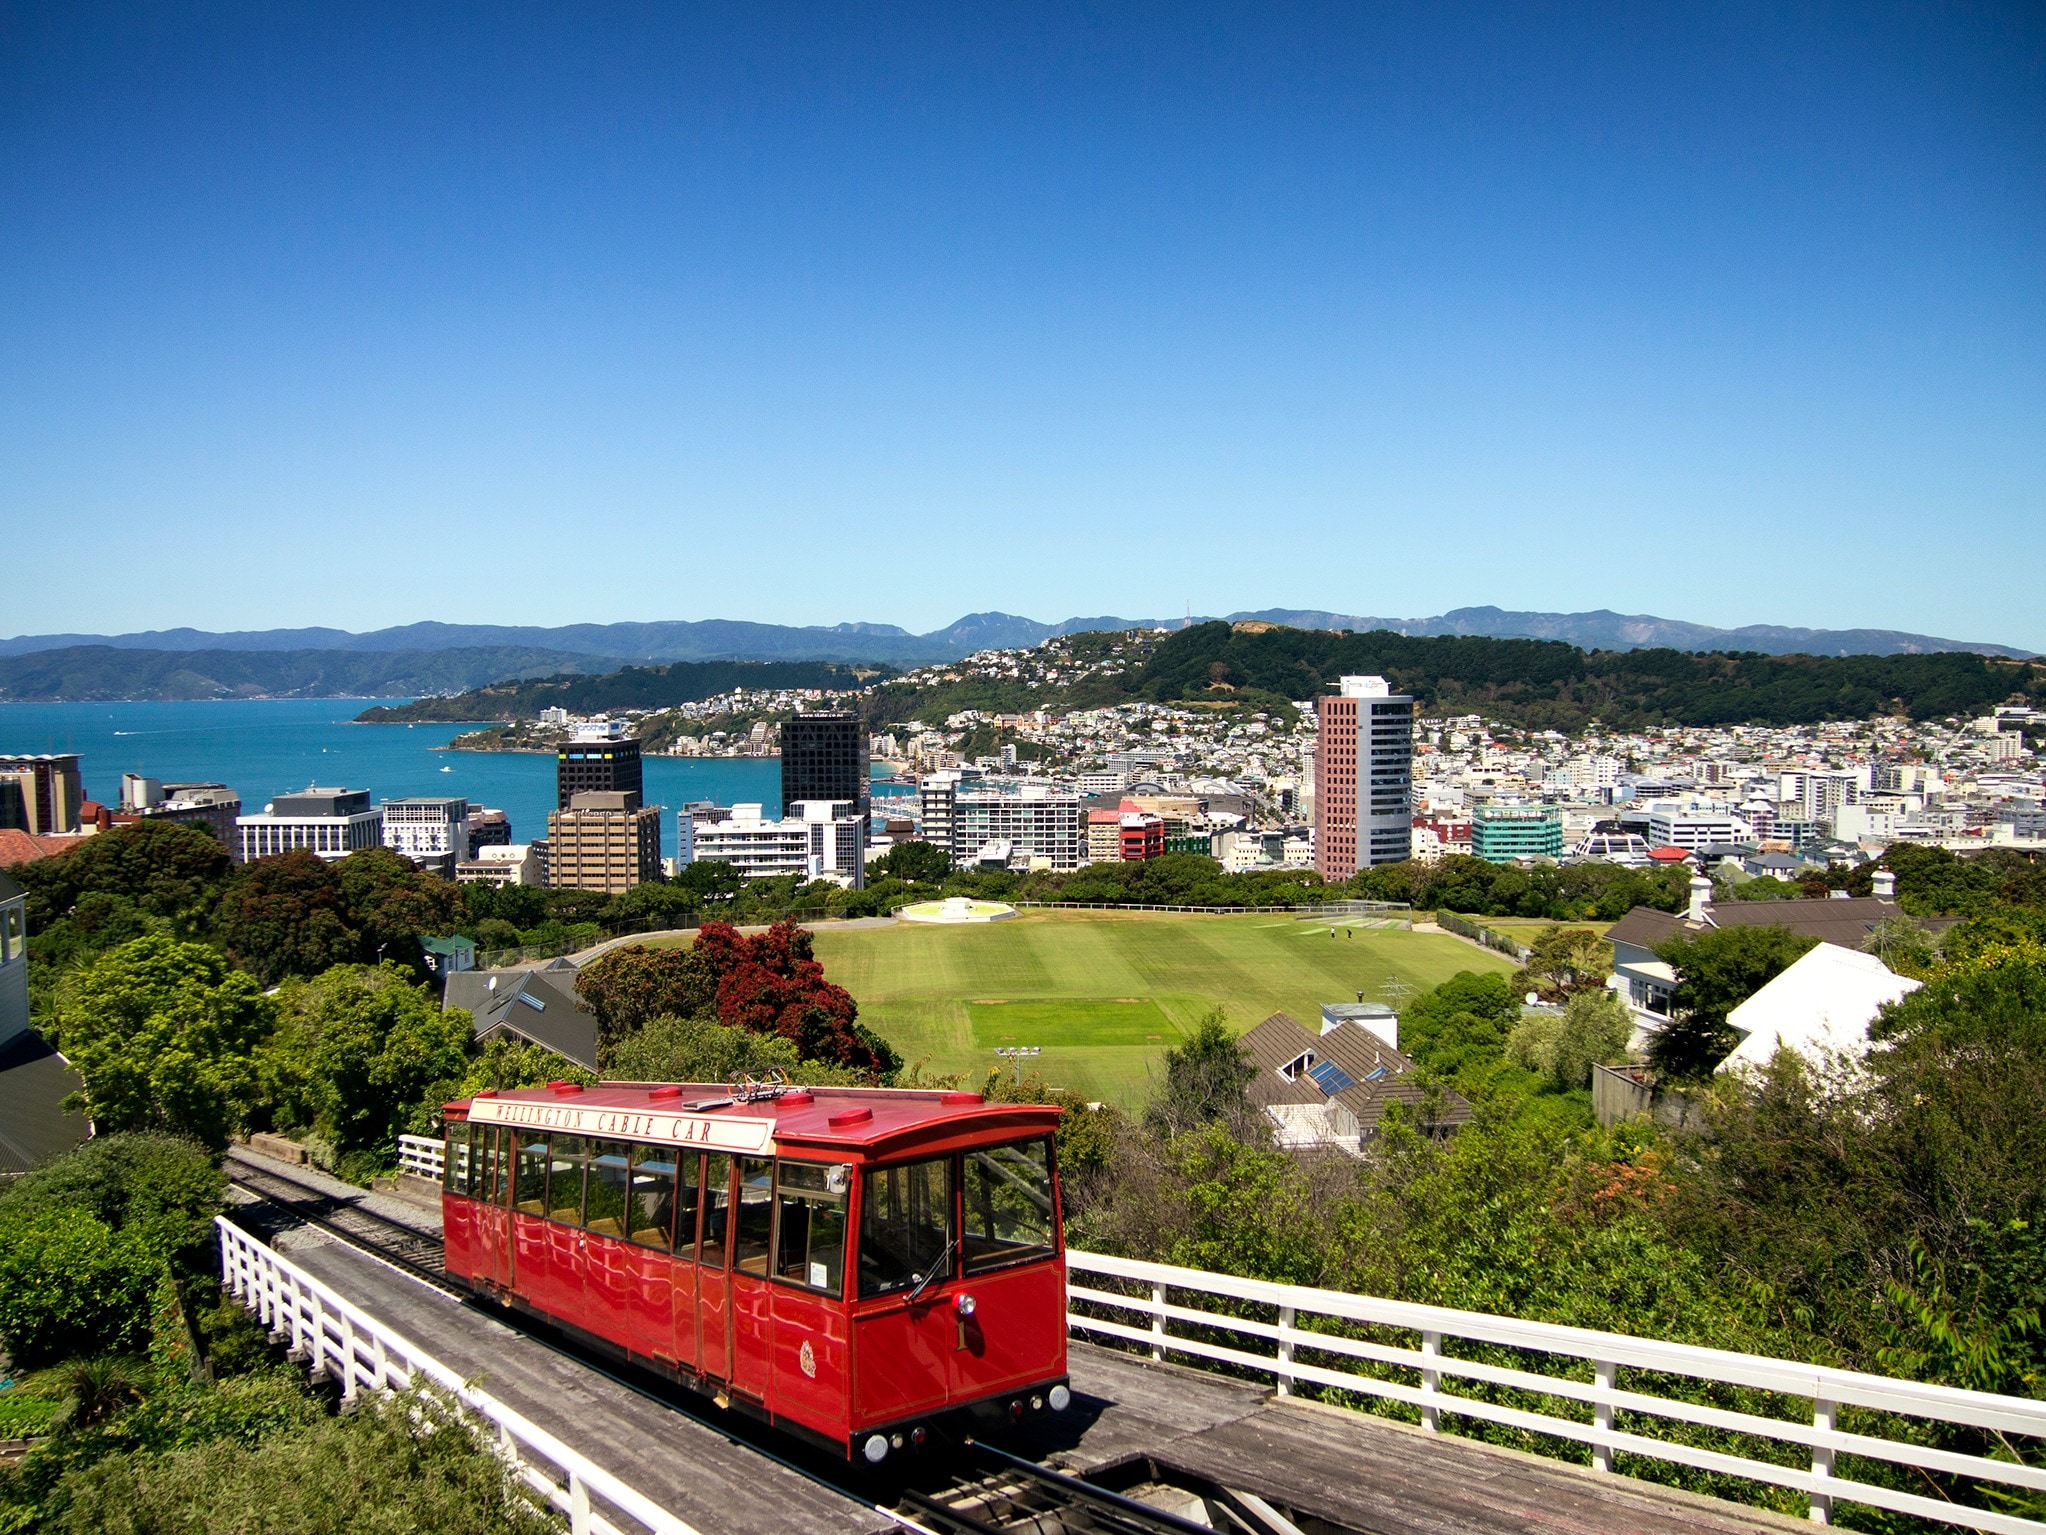 New Zealand, Wellington, Train, Railroad, built structure, architecture